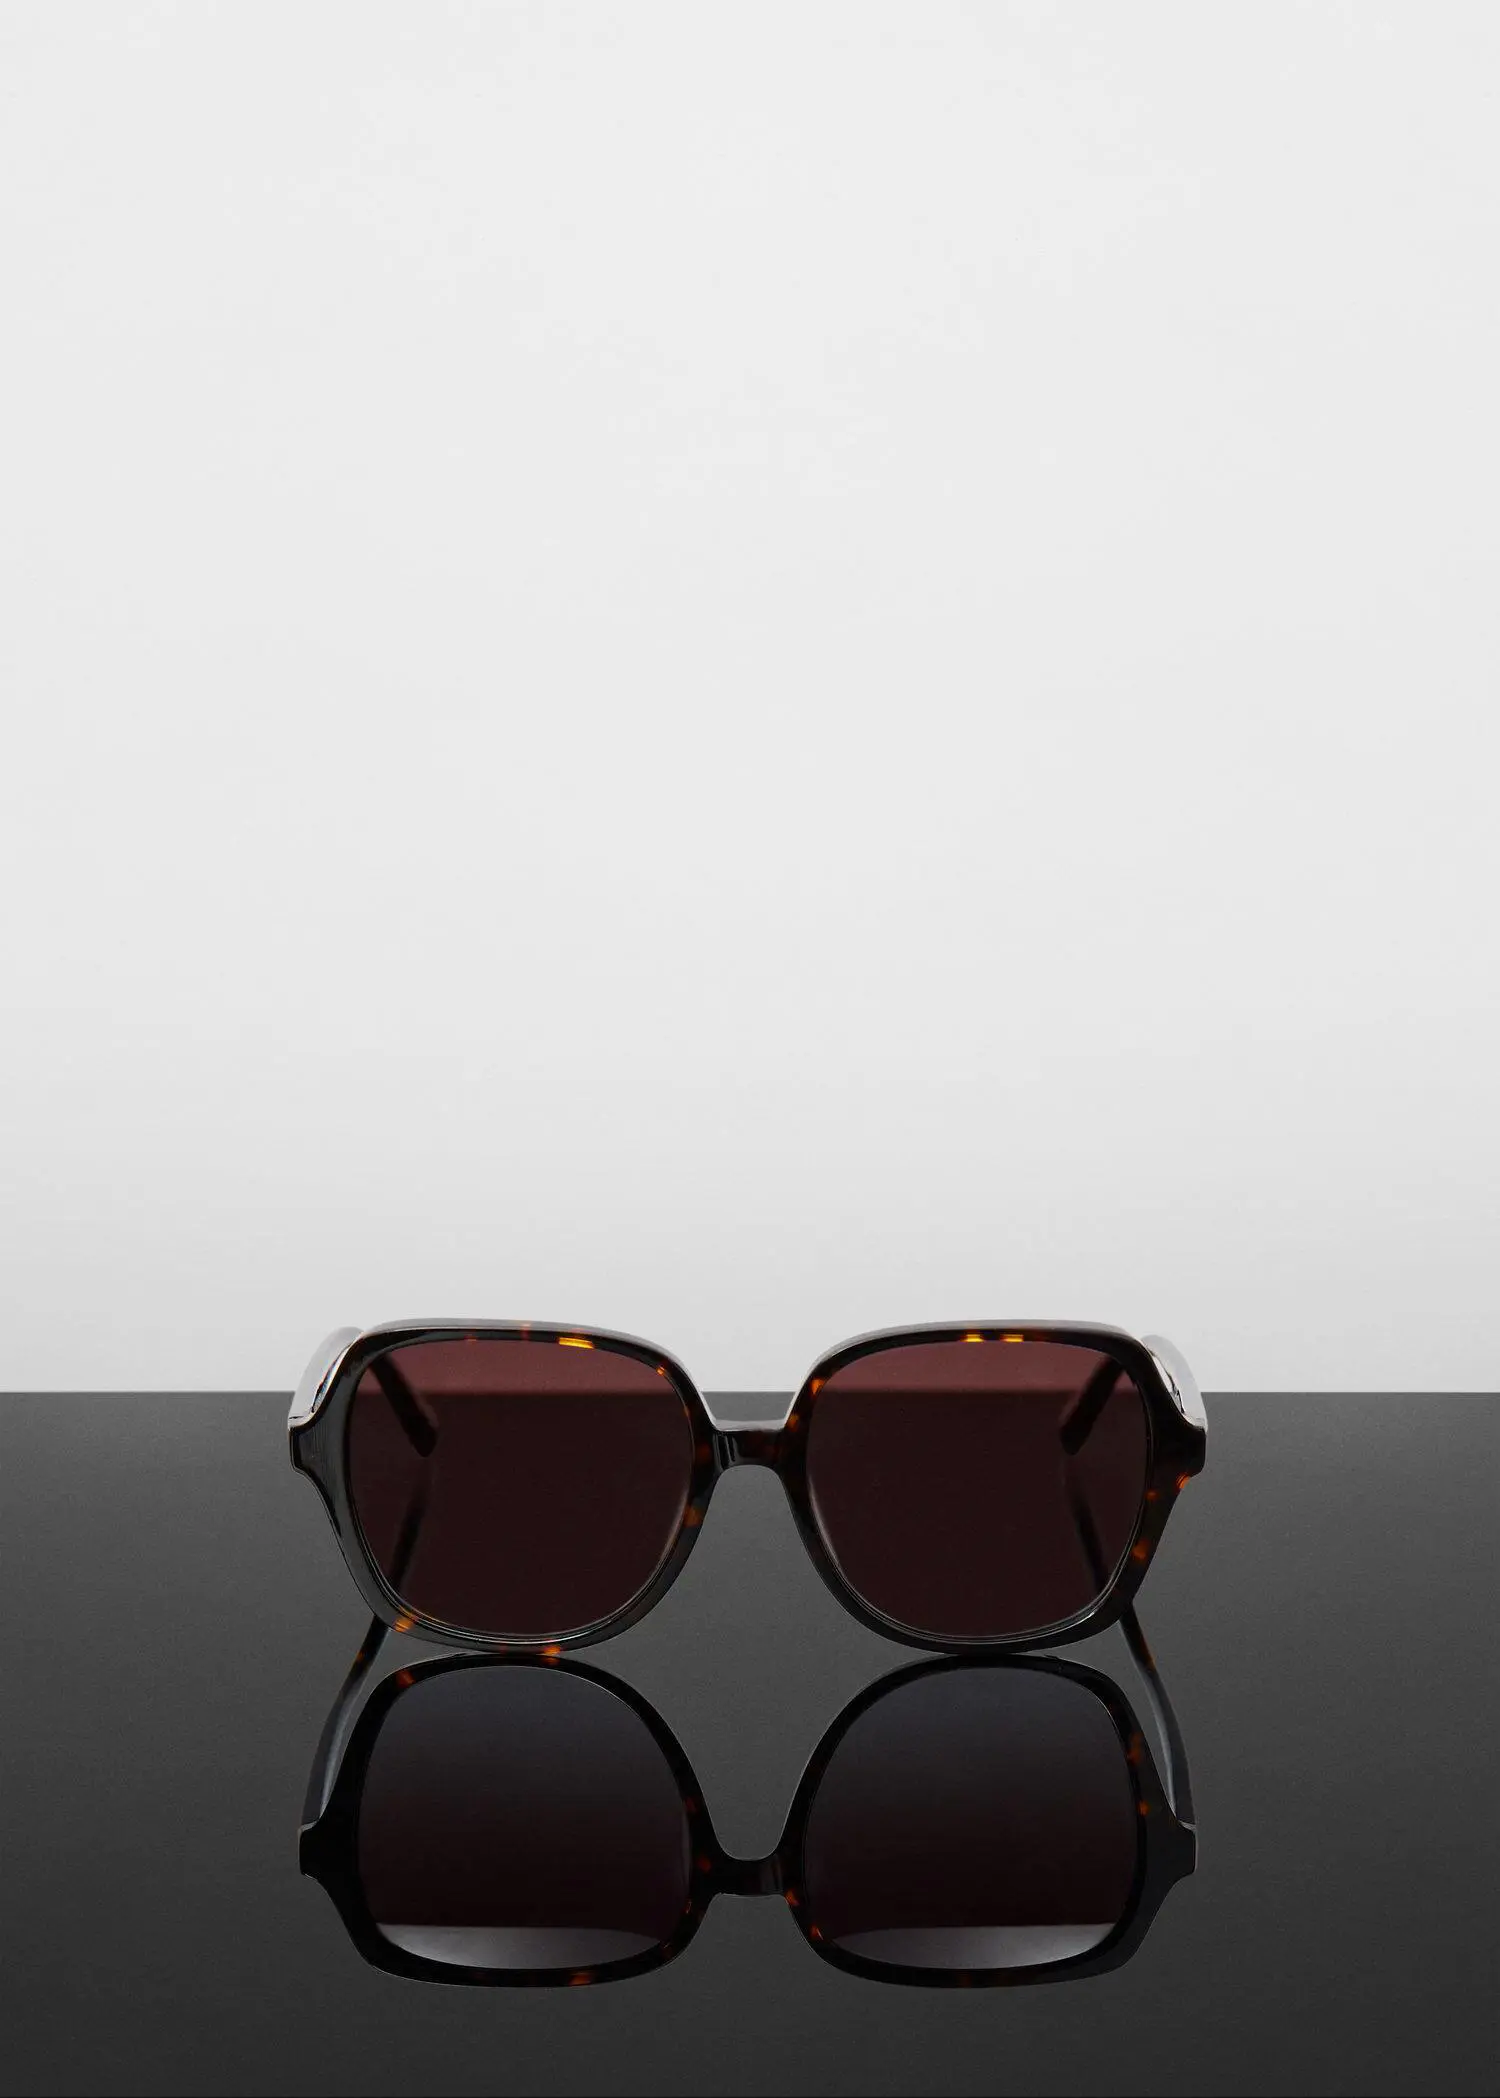 Mango Tortoiseshell square sunglasses. 3